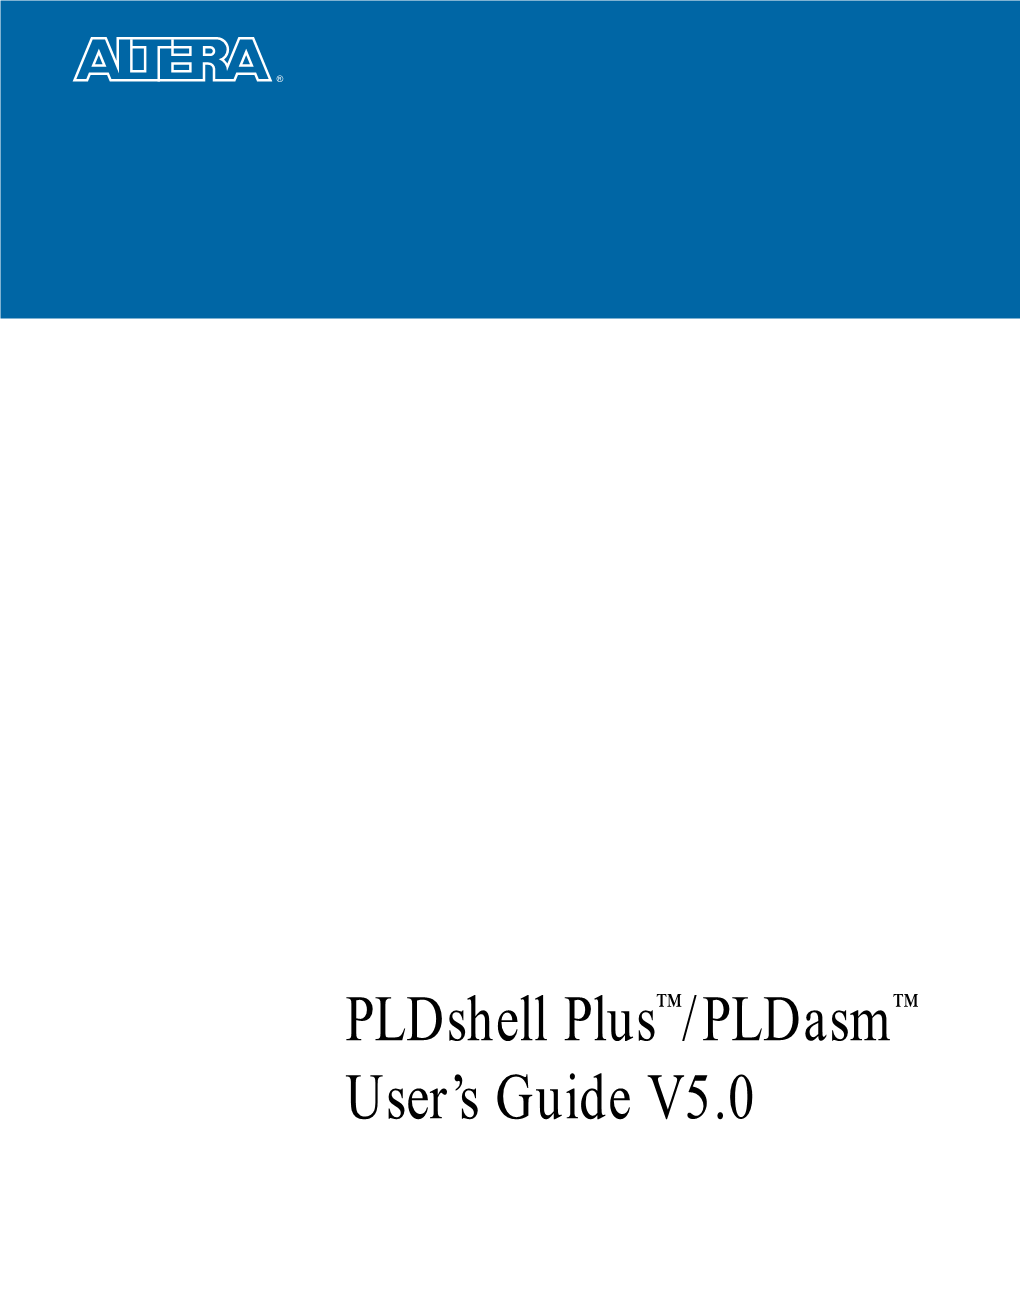 Pldshell Plus/Pldasm User's Guide V5.0